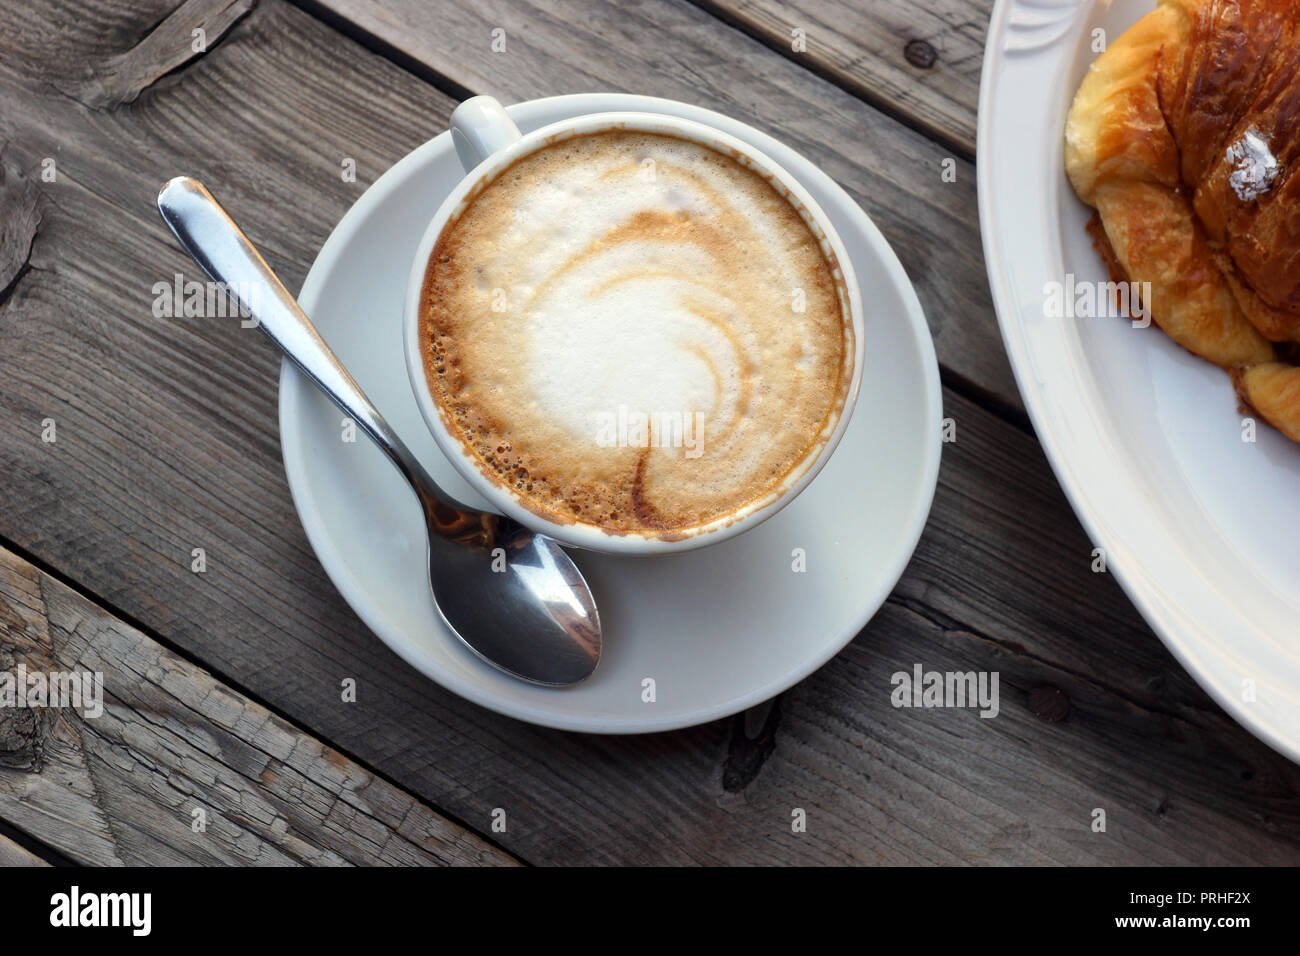 Merveilleux petit-déjeuner italien traditionnel. Délicieux chaud cappuccino italien se tient dans une tasse avec une soucoupe sur une table en bois. Сroissant sur une assiette. Banque D'Images